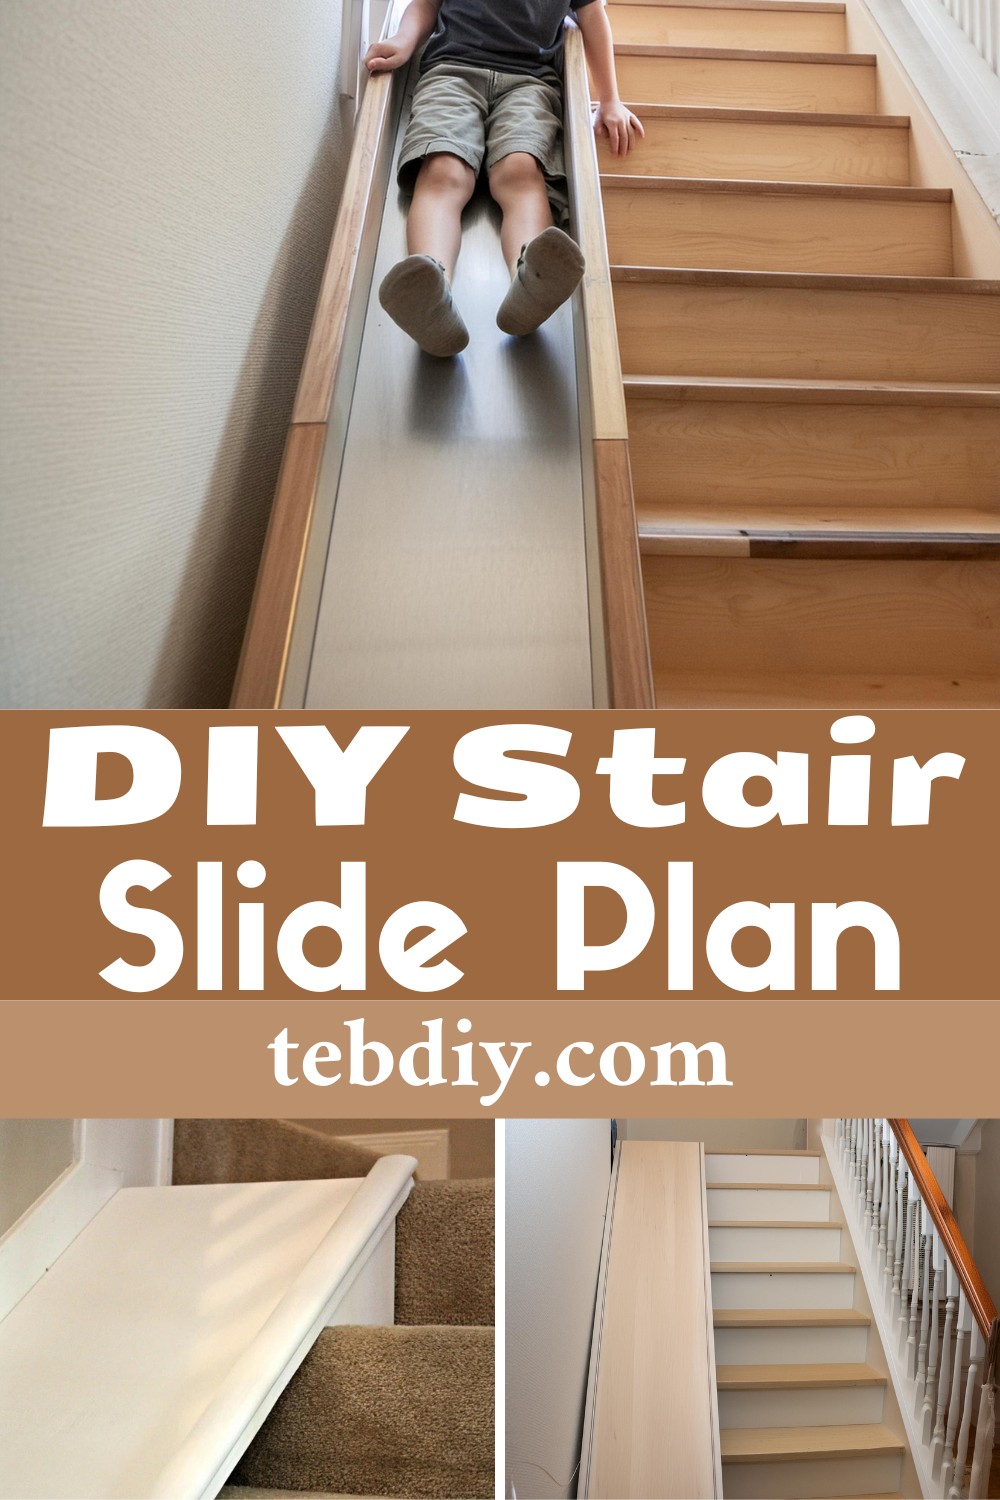 DIY Stair Slide Plan